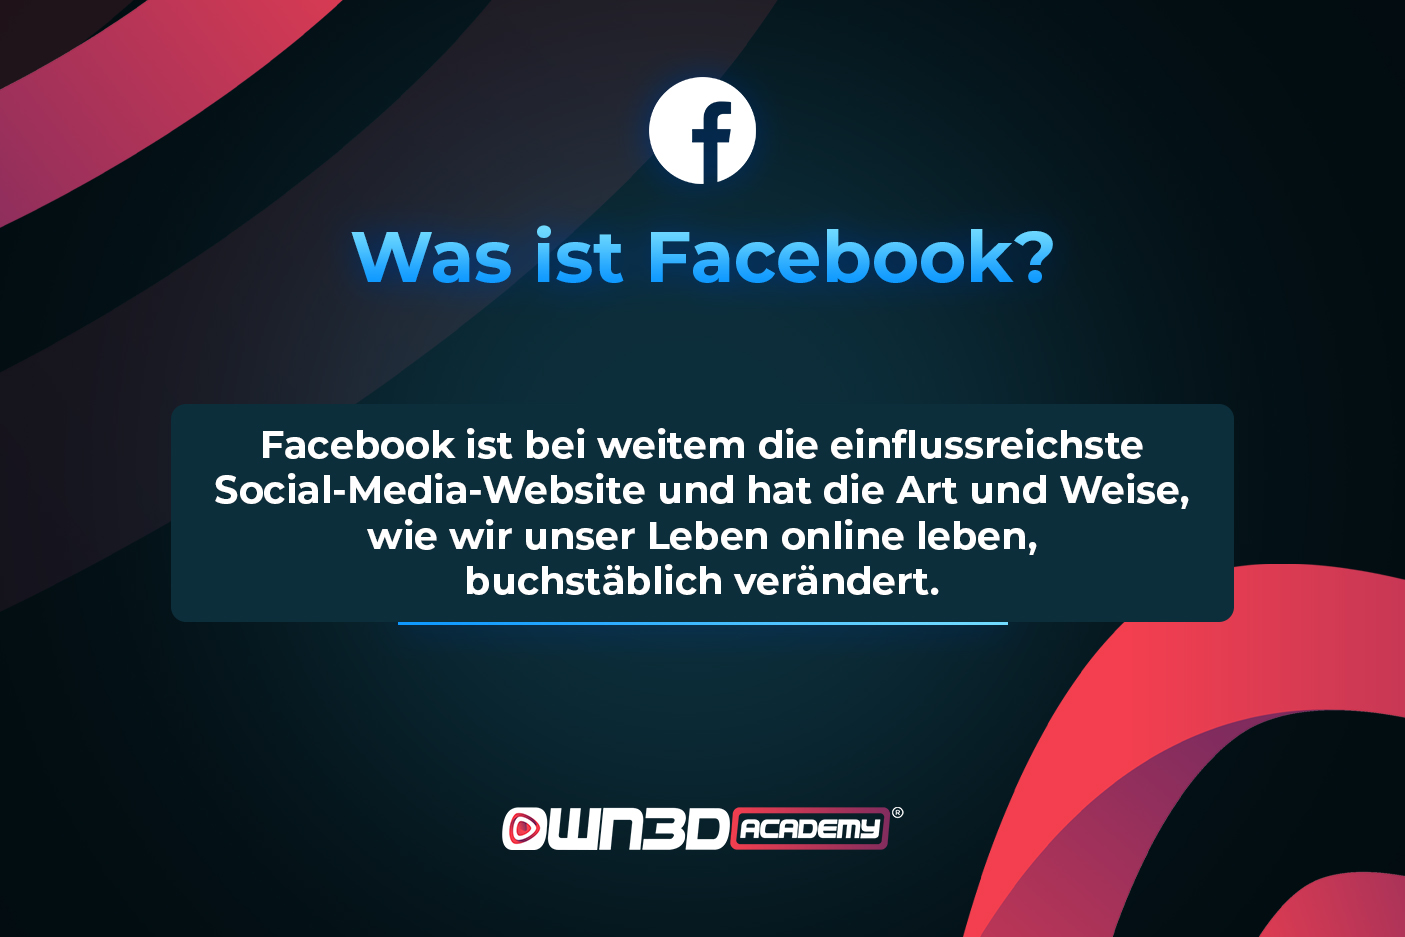 GER_L1_FacebookHistoryandKeyfacts_WhatIsFacebook.jpg